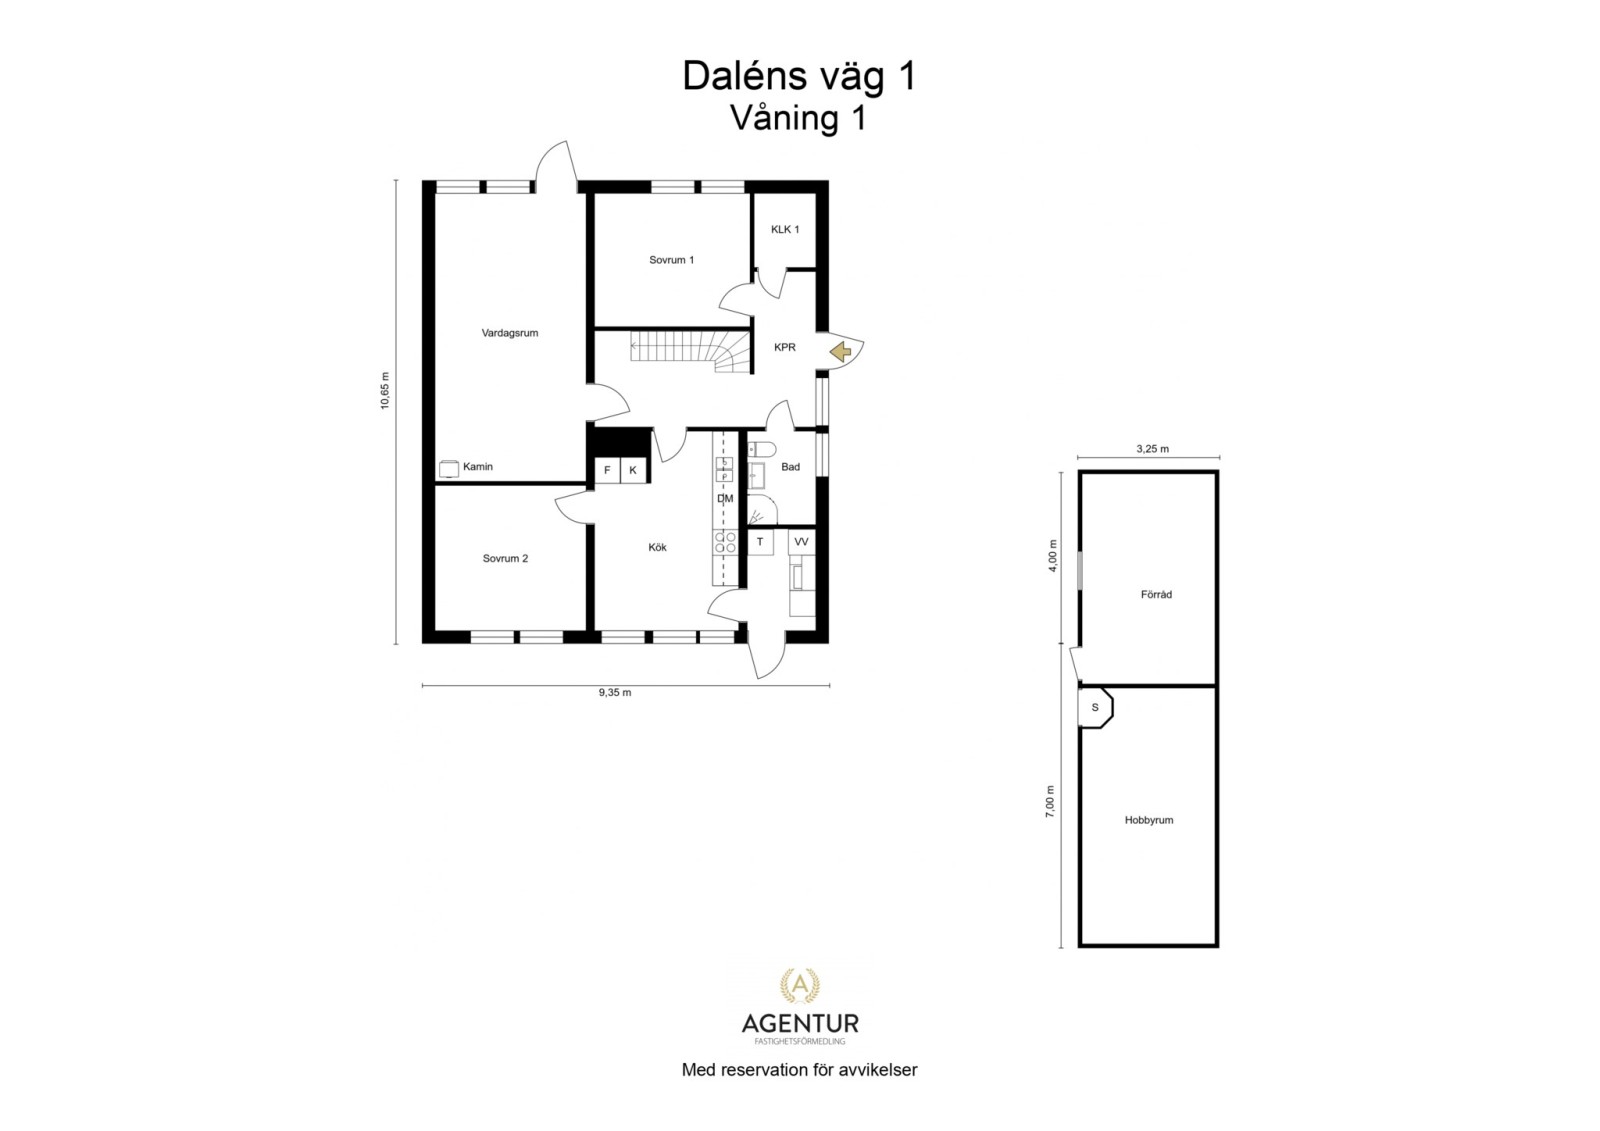 2D Floor Plan - Våning 1 - Letterhead Daléns väg 1